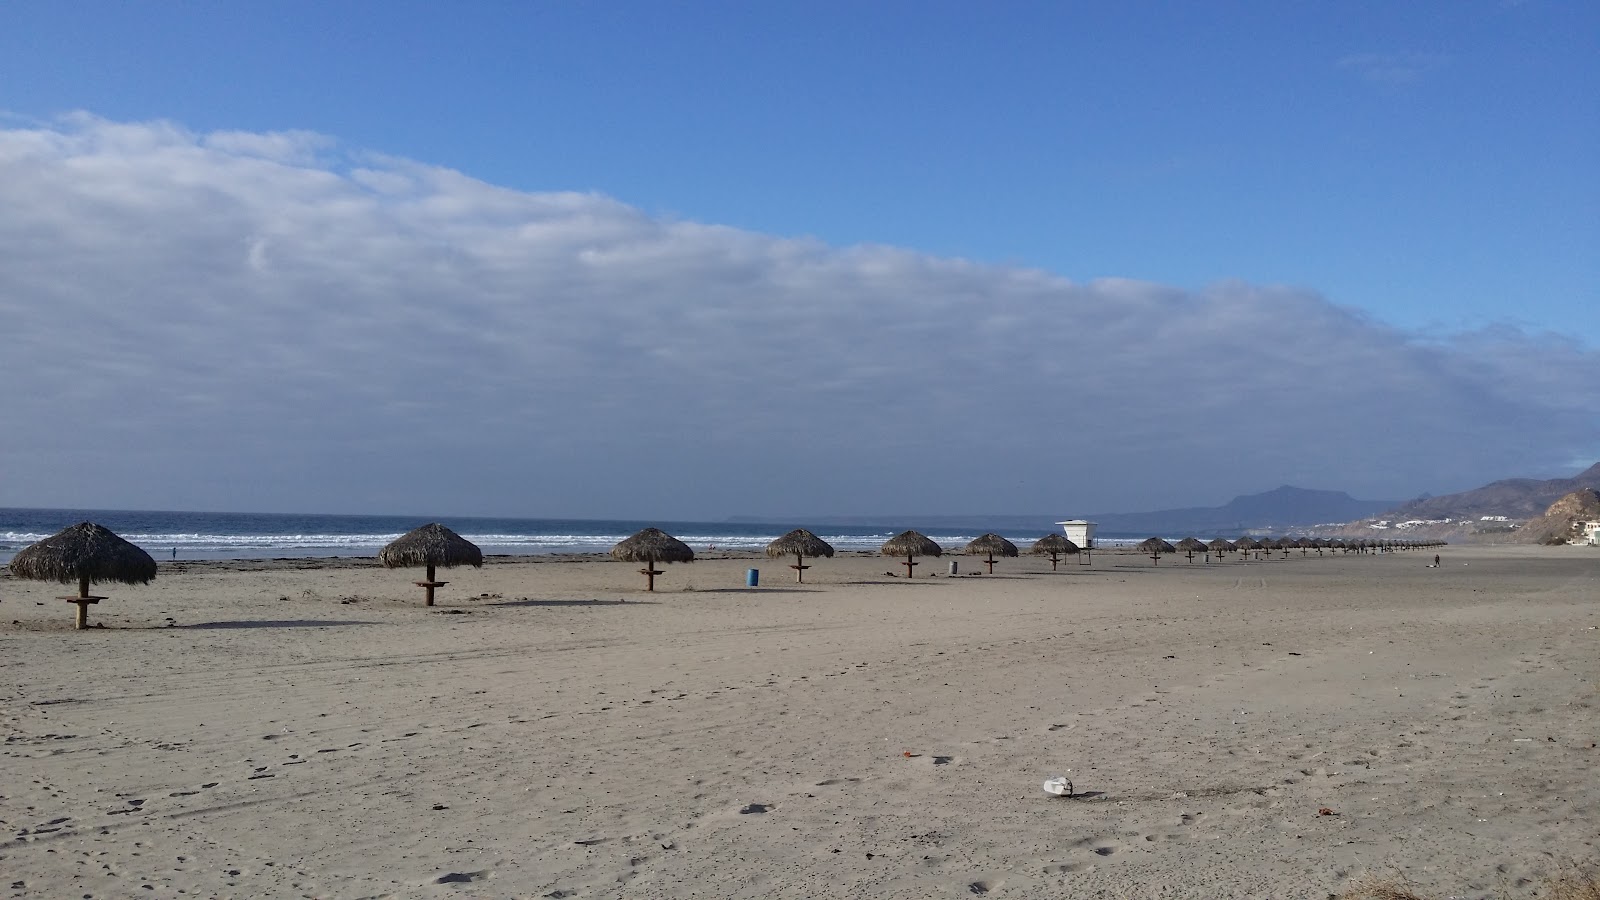 Zdjęcie Playa la Mision z powierzchnią brązowy piasek